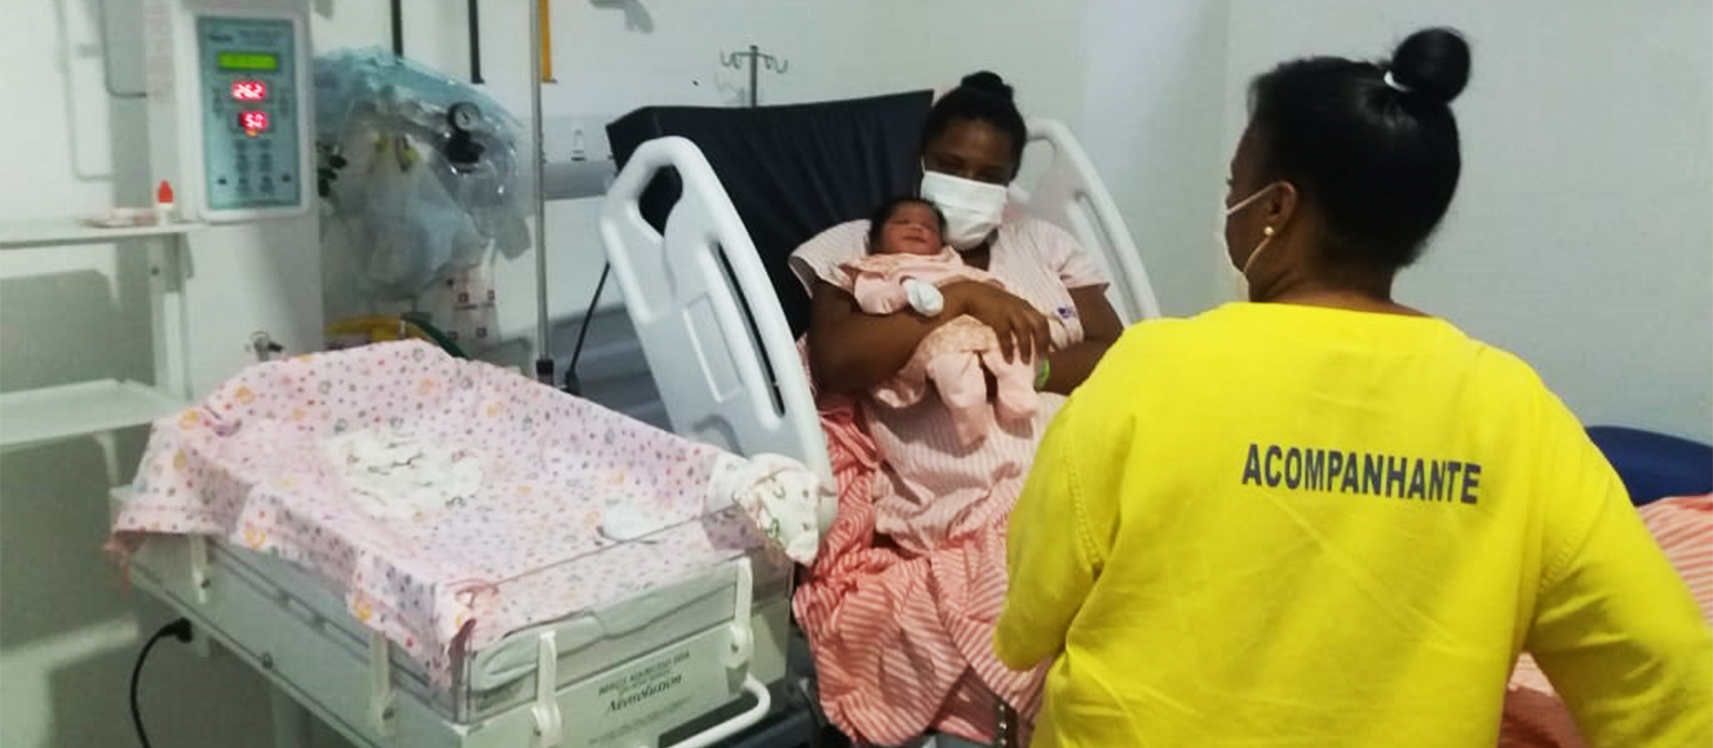 FEIRA DE SANTANA: Hospital da Mulher restringe visitas seguindo protocolos sanitários